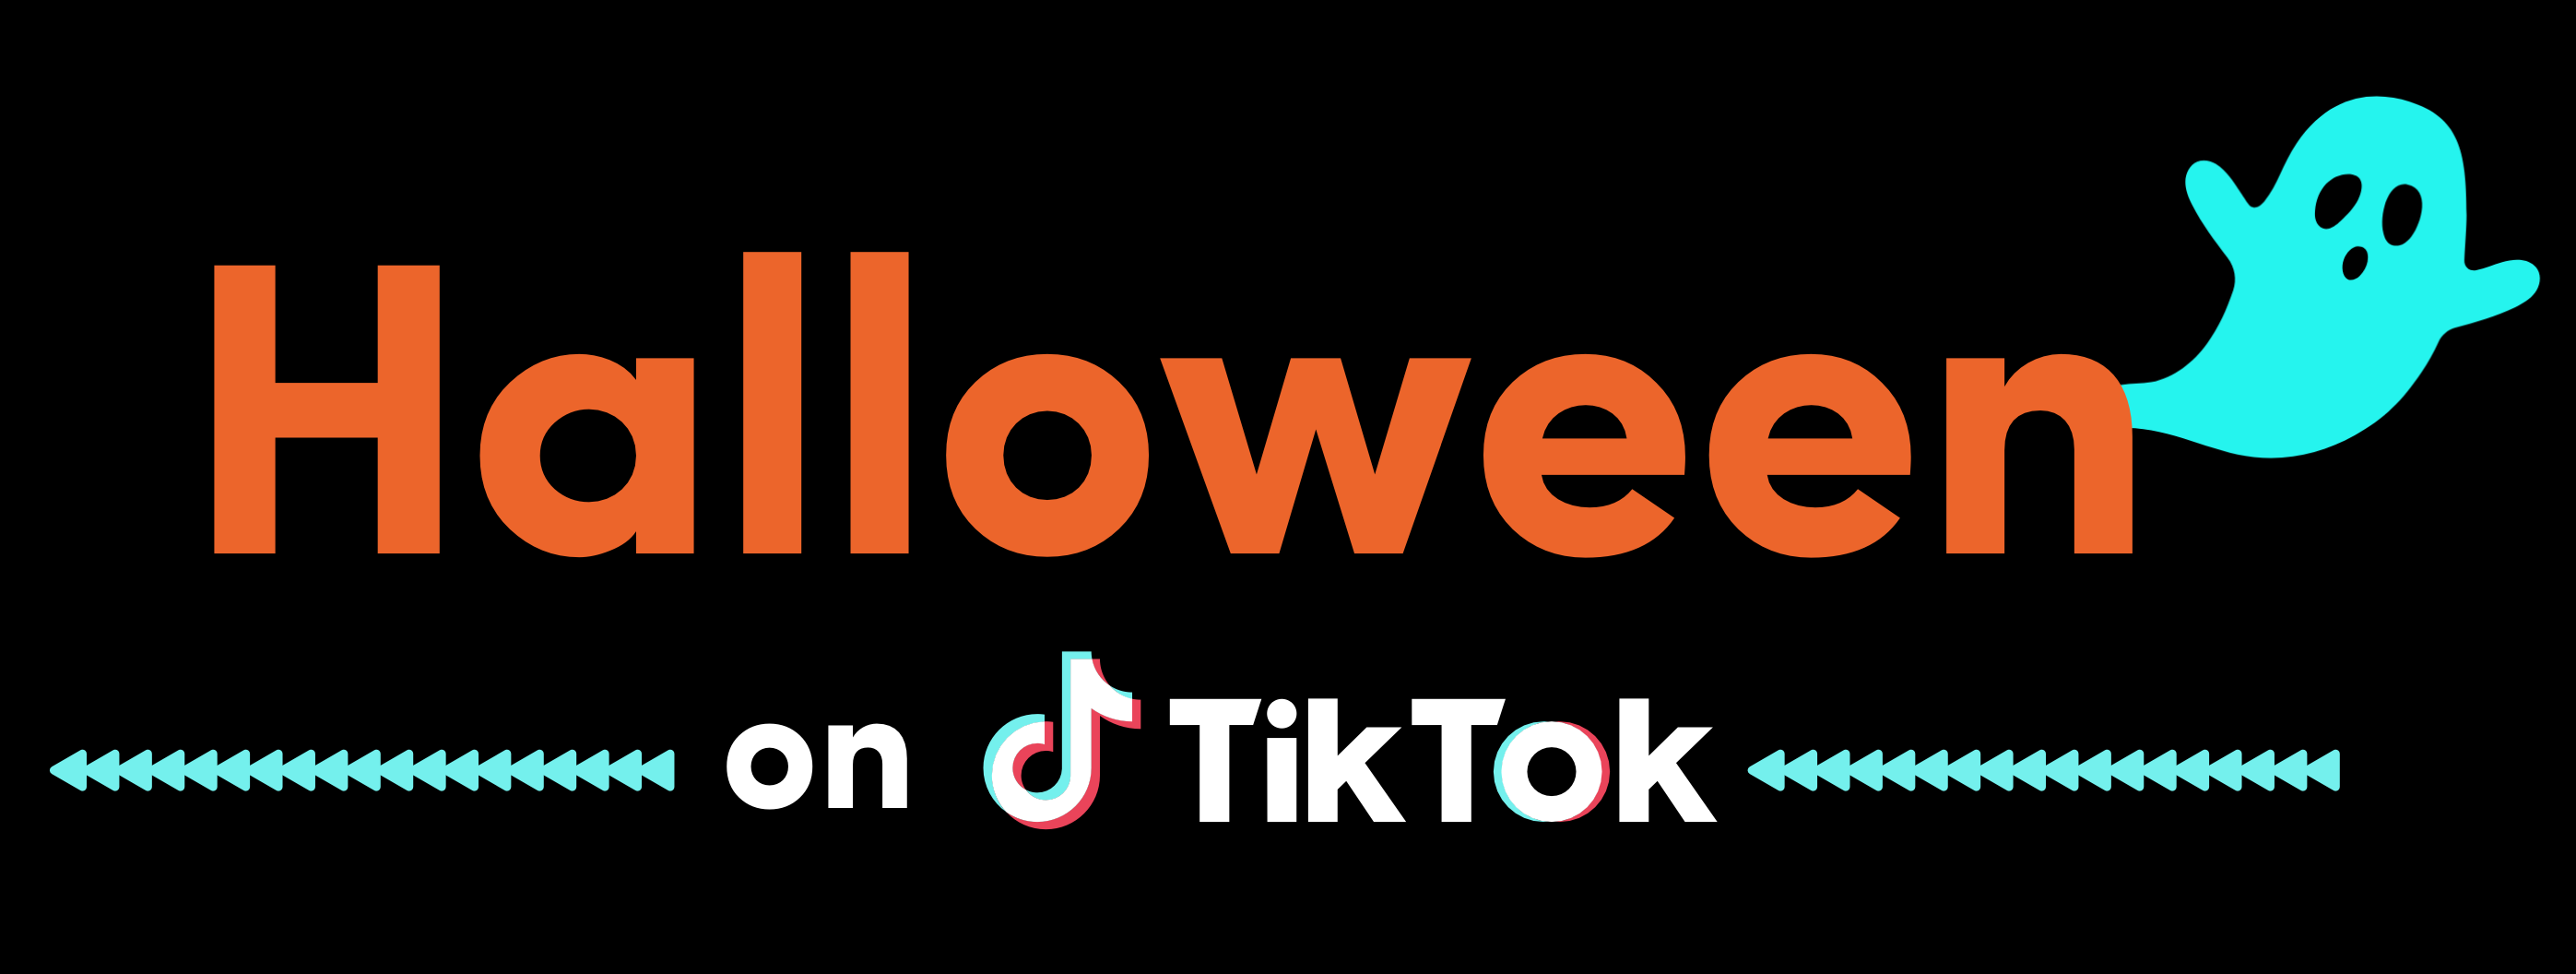 Halloween on TikTok